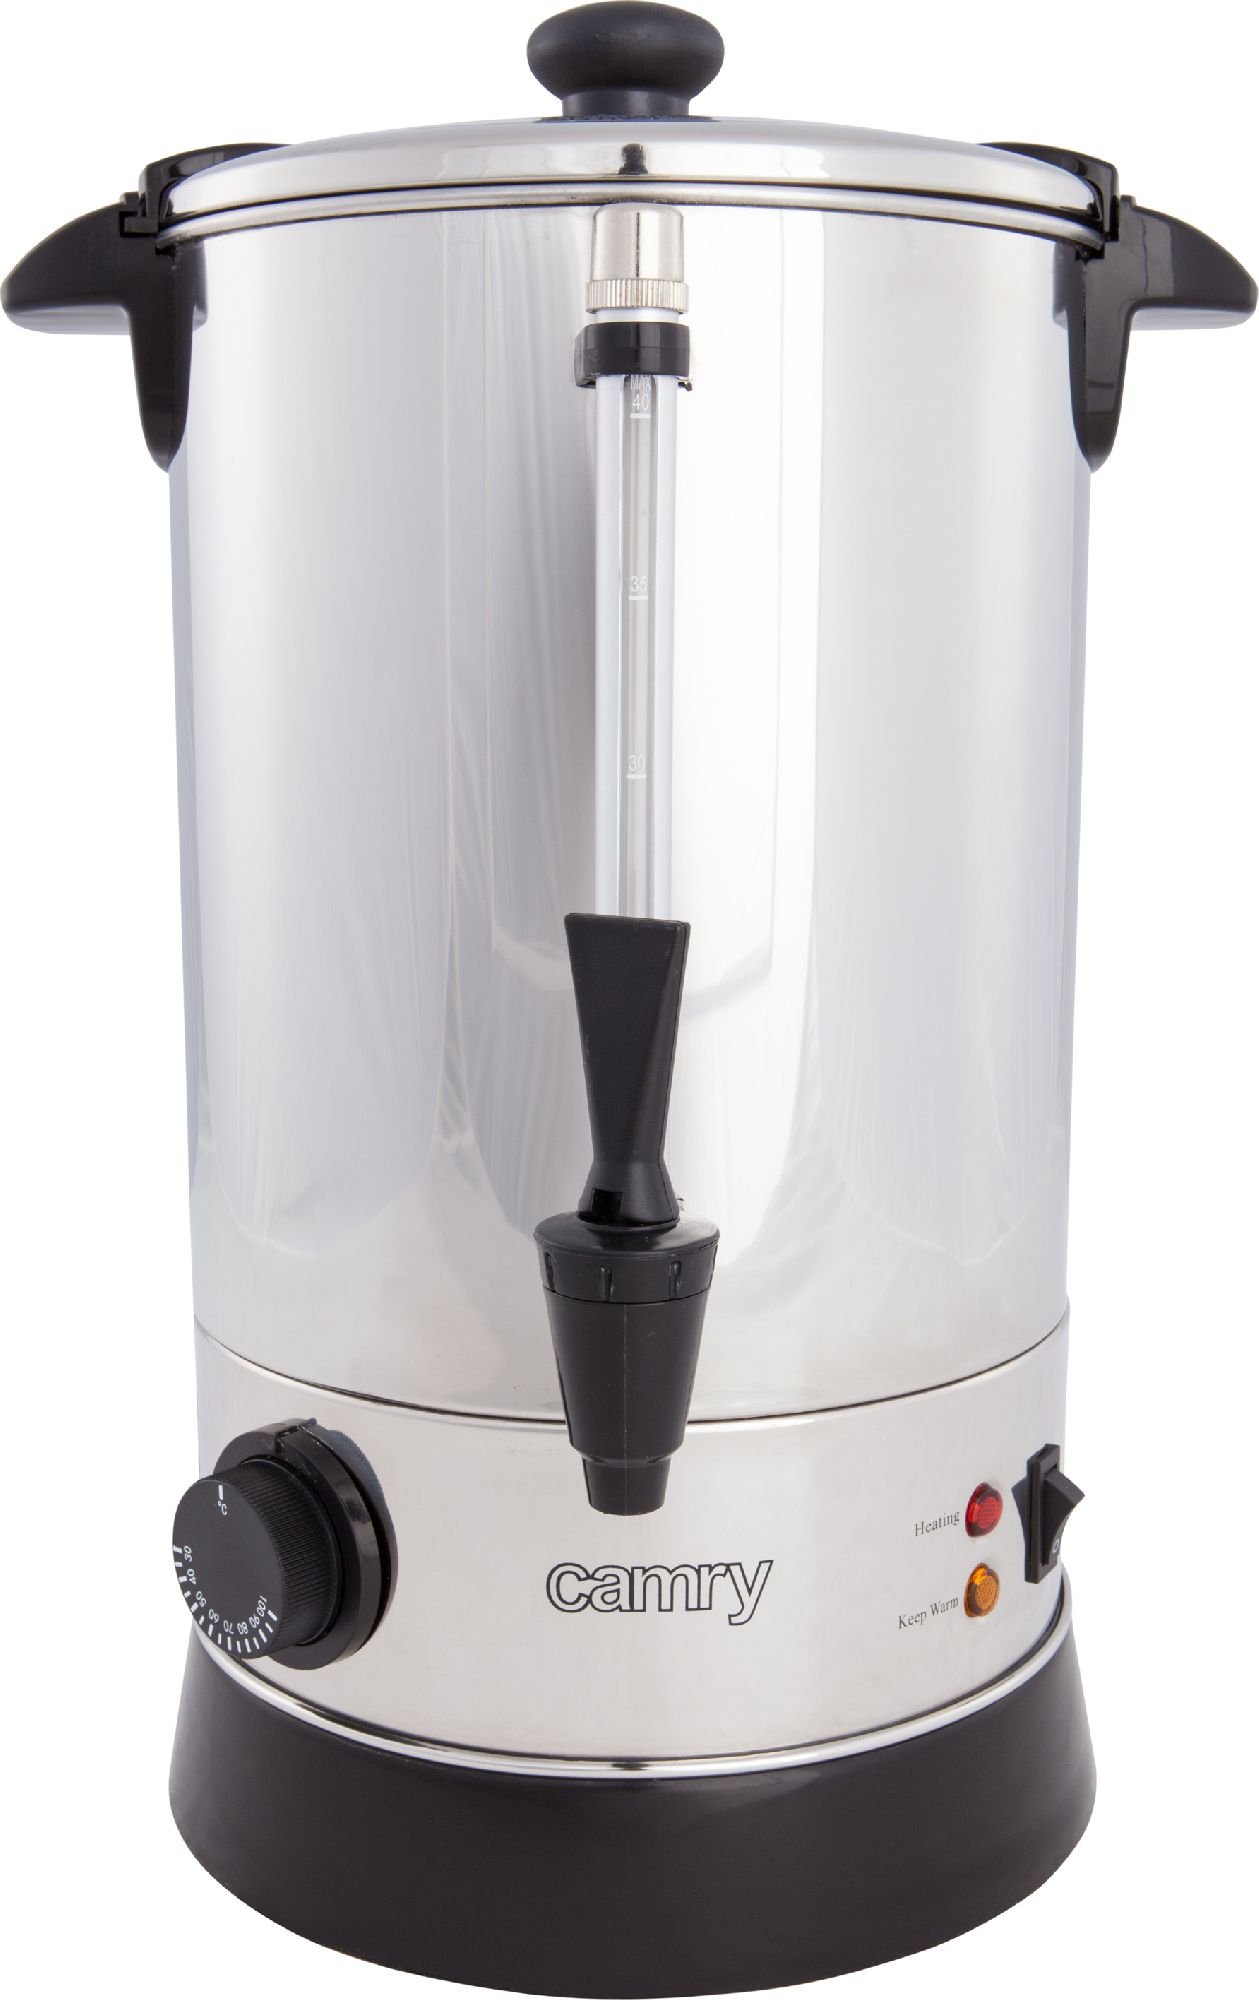 Gratare electrice - Boiler dispenser bauturi calde Camry CR 1267, capacitate 8.8 L, 950W, oprire automata, mentinere temperatura, 8 trepte, 30-100 grade C, Inox